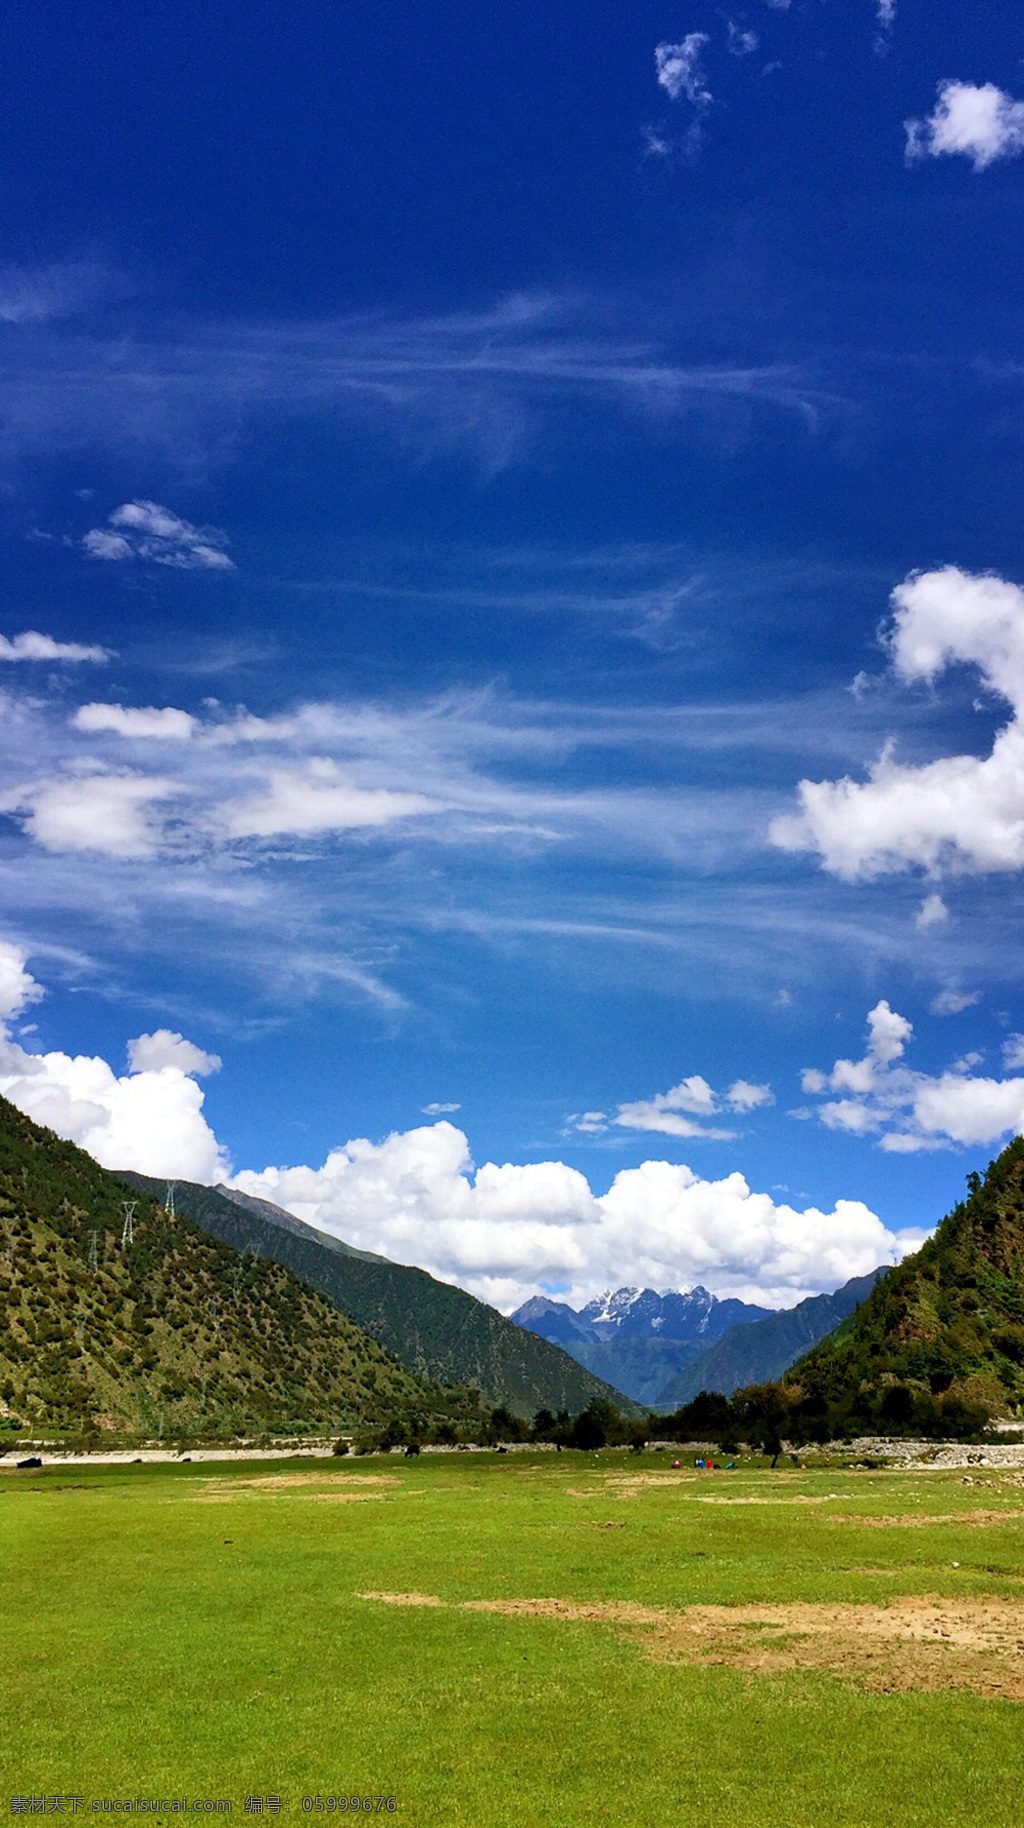 巴杰塘草原 西藏 拉萨 八一镇 米拉山 318 国道 风景 川藏线风景 草原 蓝天 白云 旅游摄影 国内旅游